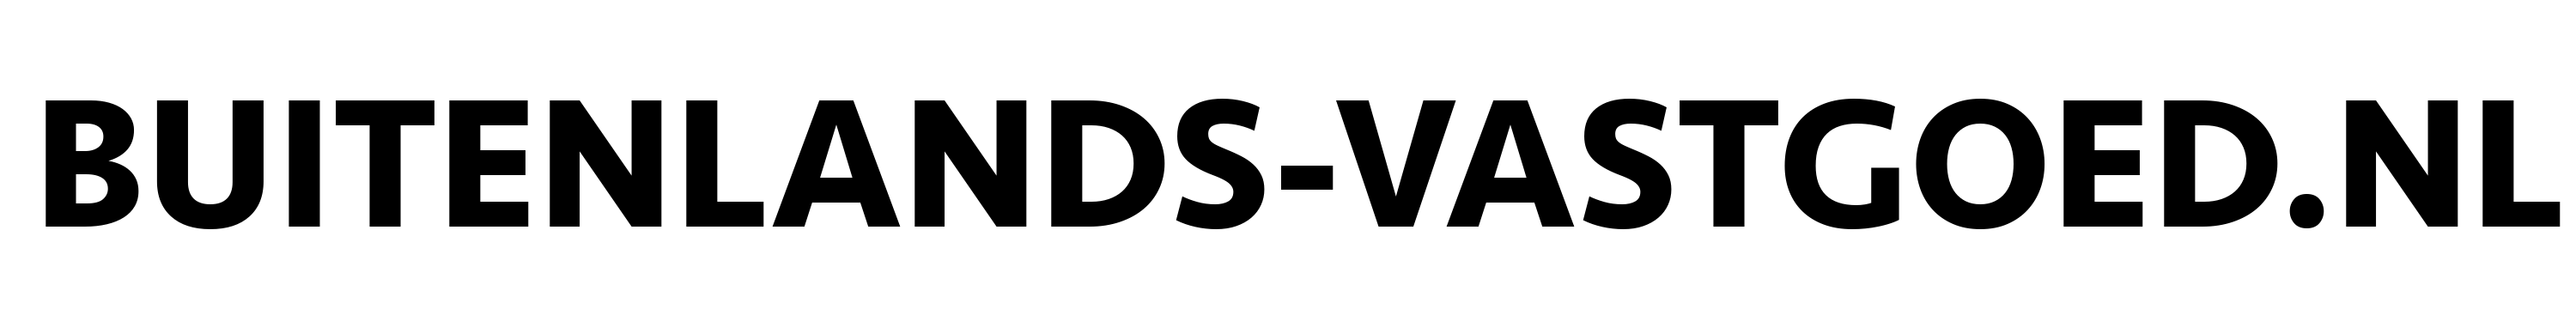 buitenlands-vastgoed-logo1